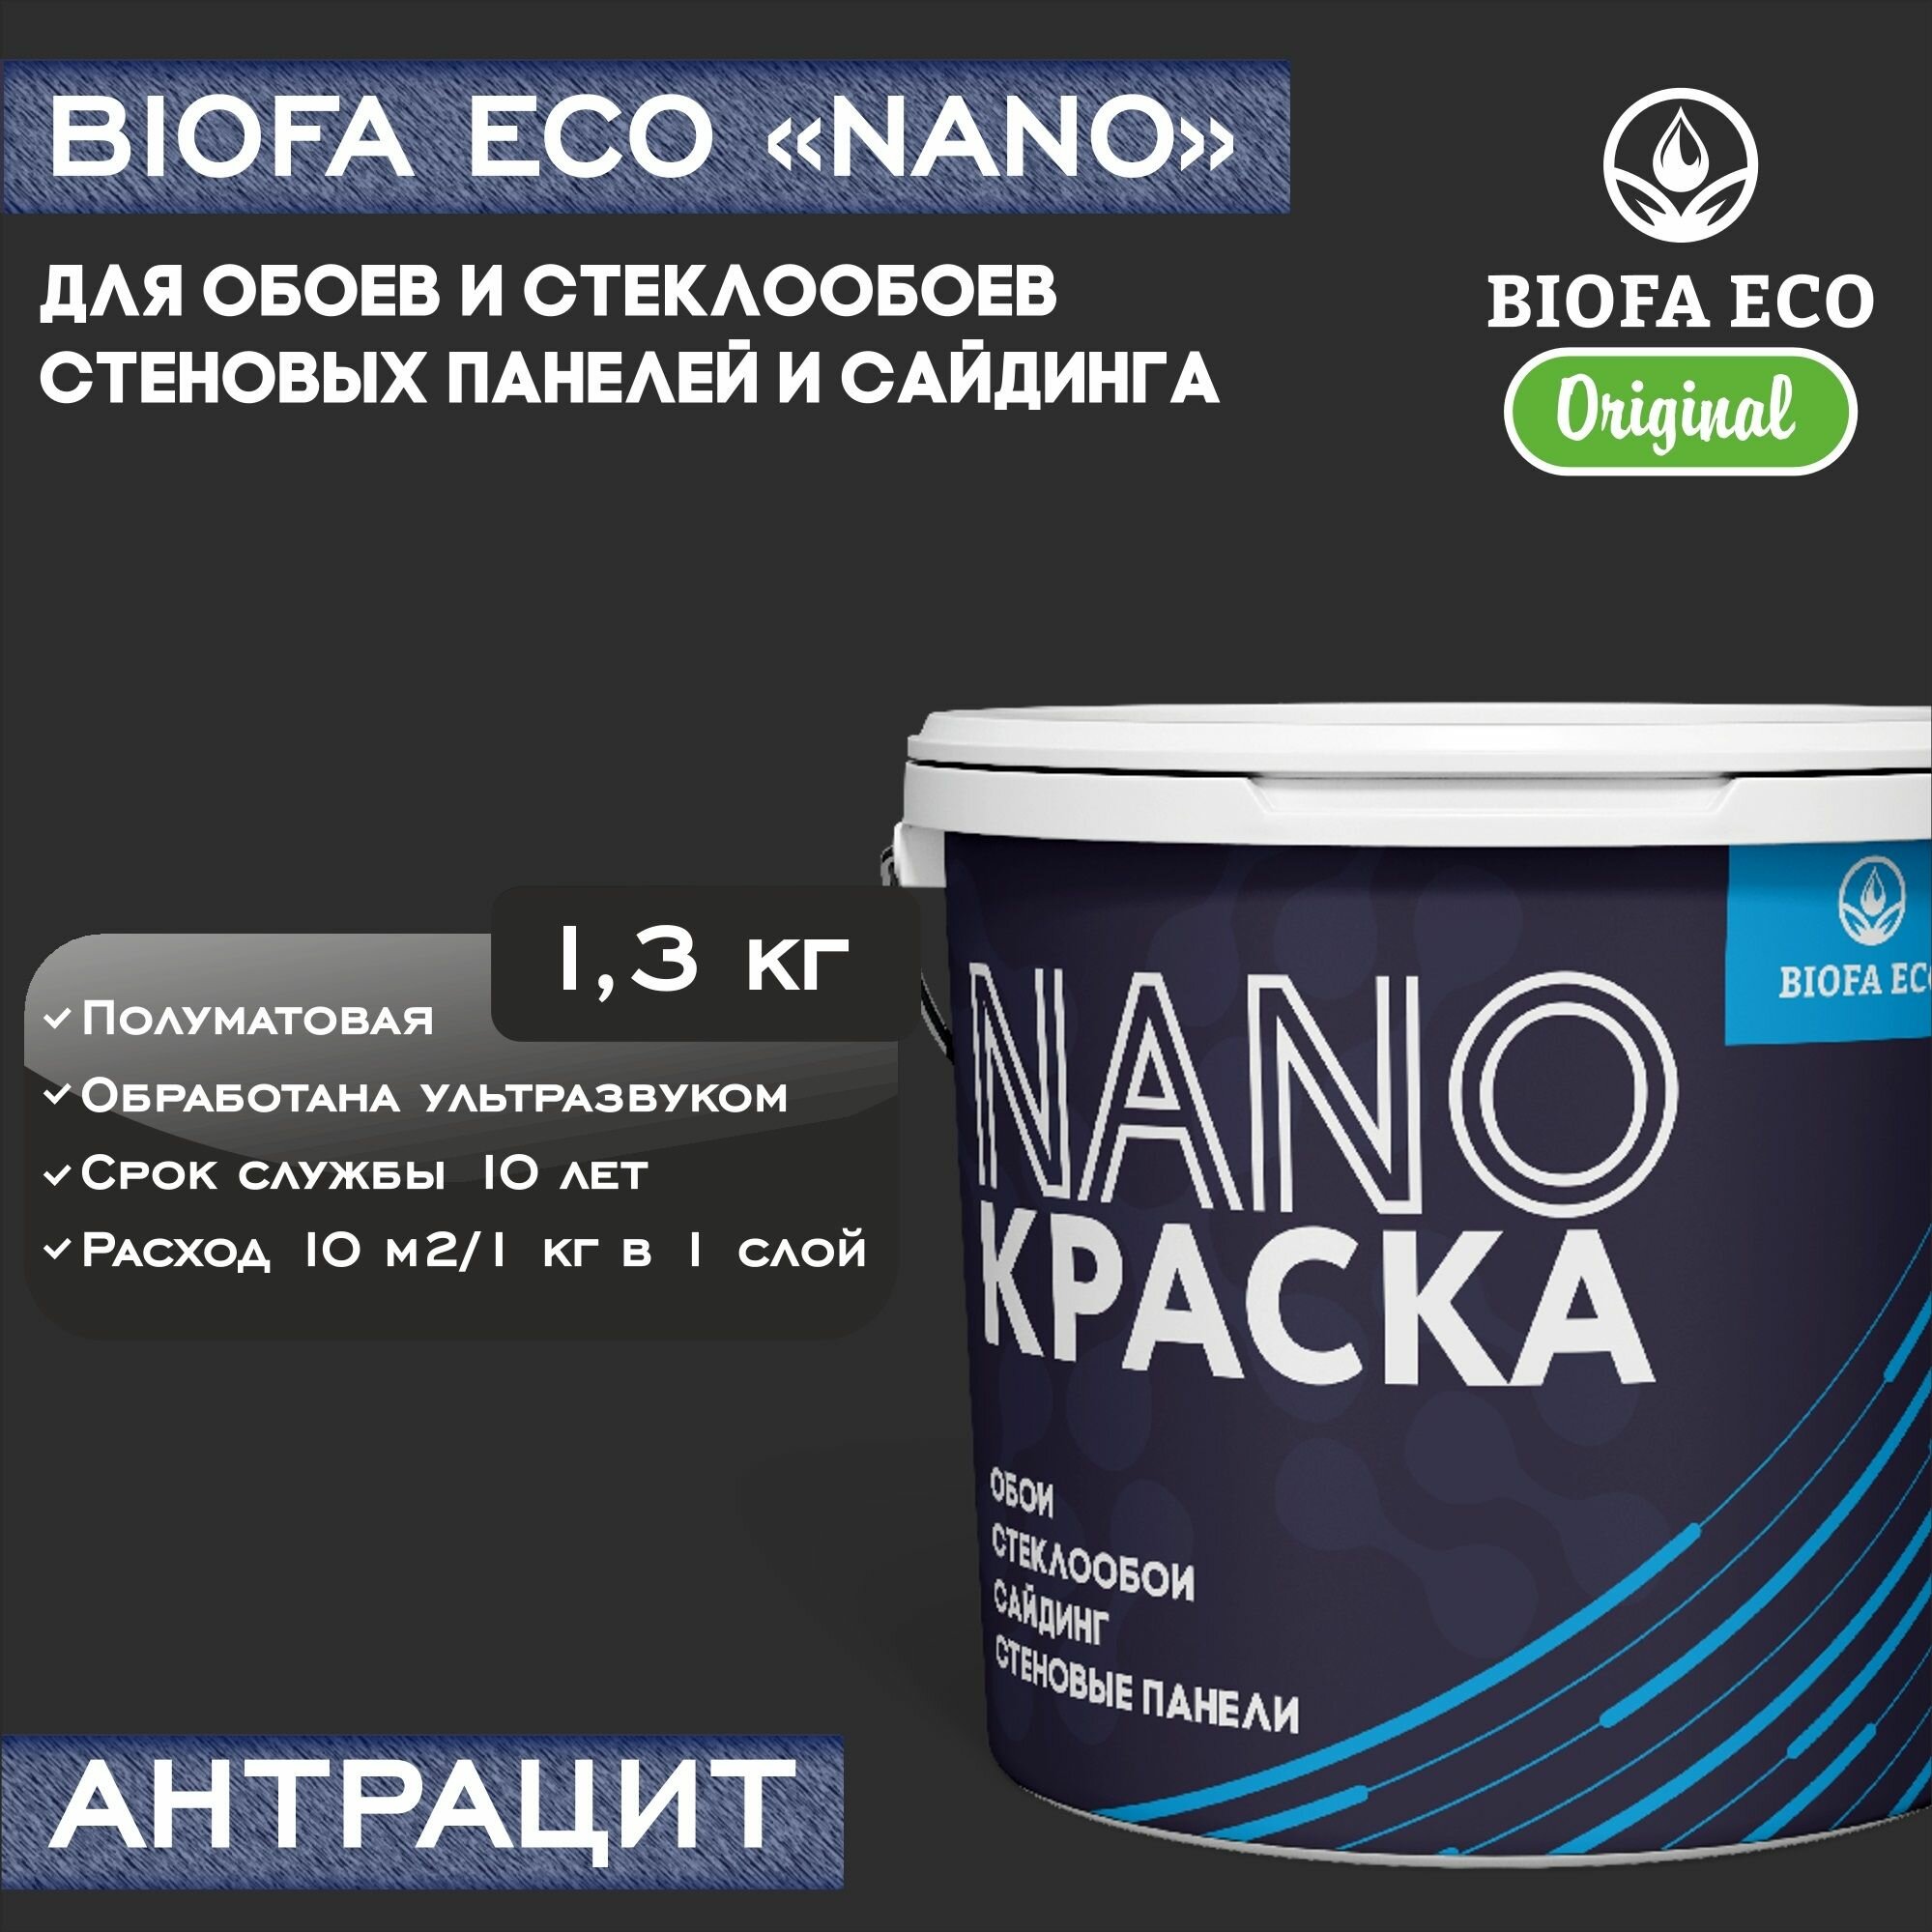 Краска BIOFA ECO NANO для обоев, стеклообоев, стеновых панелей и сайдинга, адгезионная, полуматовая, цвет антрацит, 1,3 кг